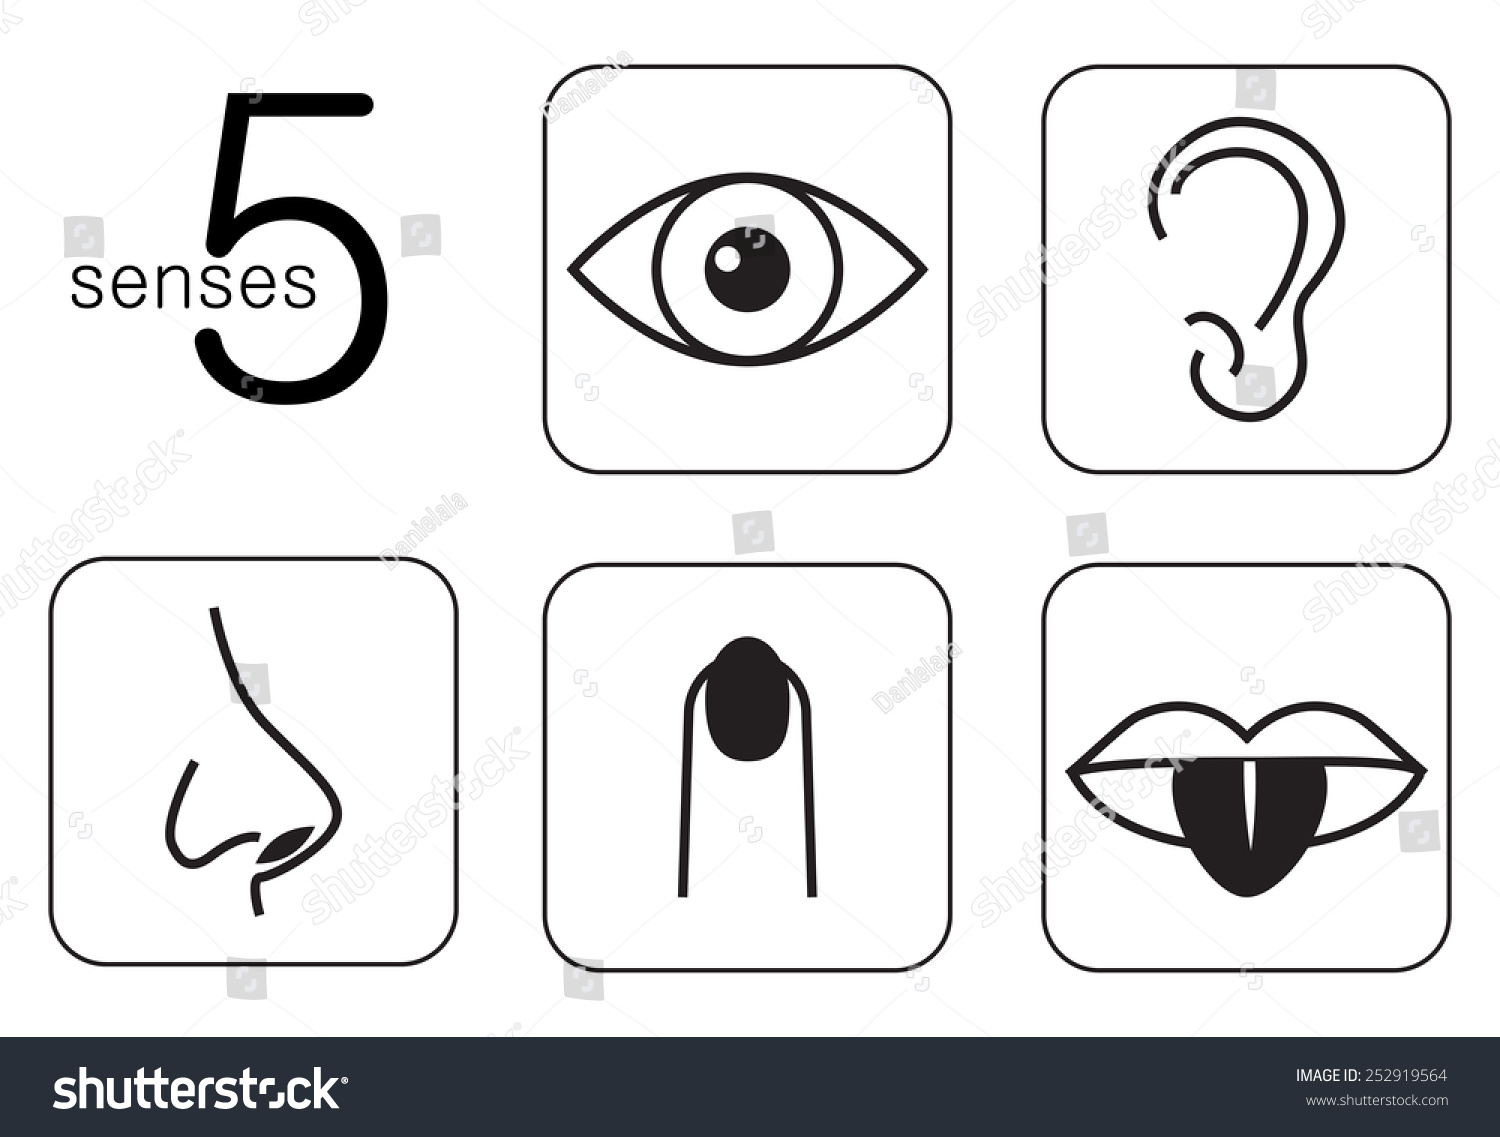 Five Senses Stock Vector Illustration 252919564 : Shutterstock